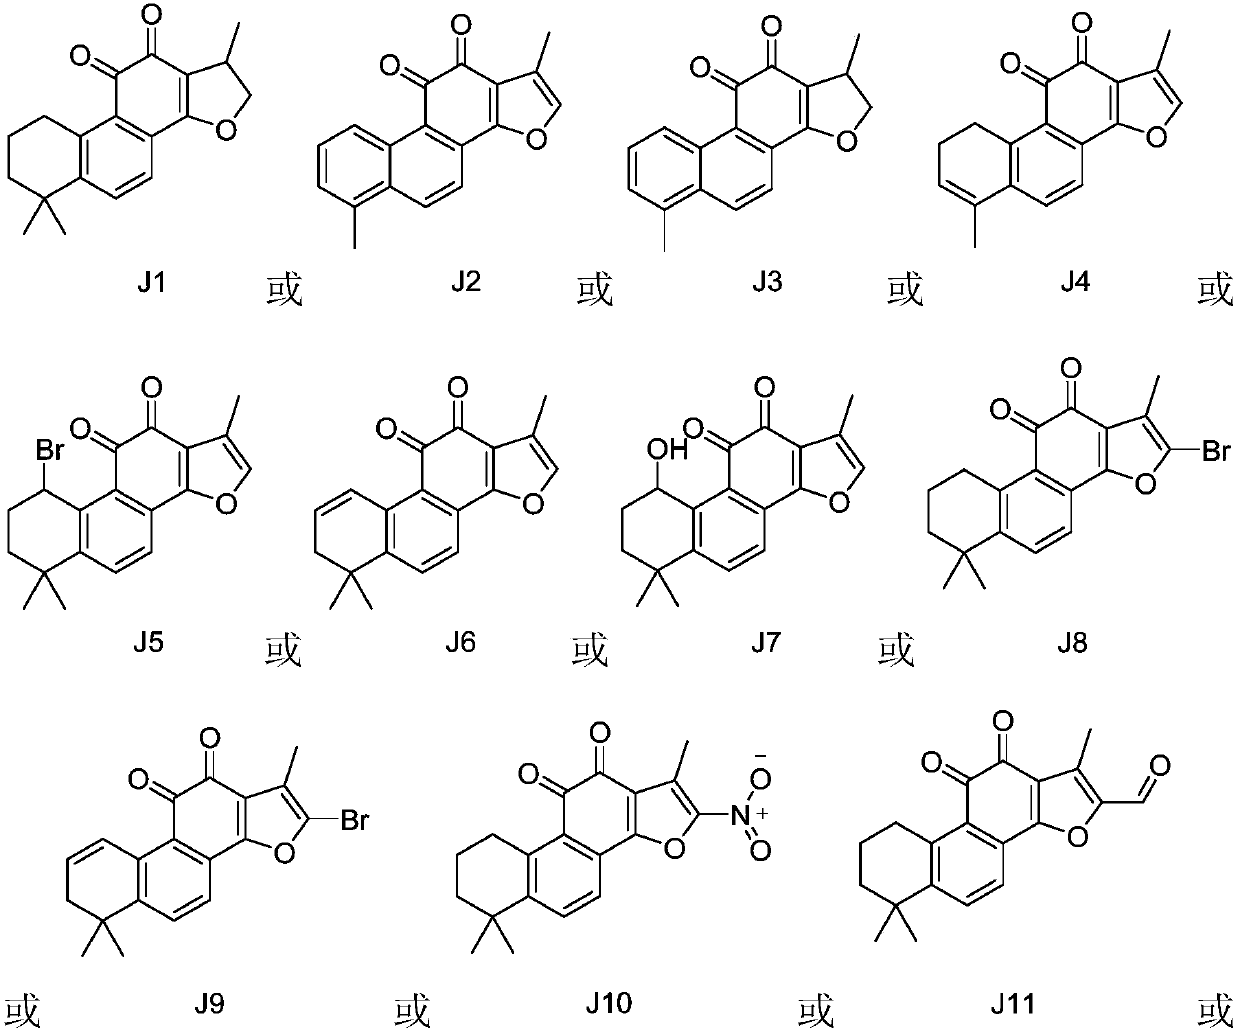 Indoleamine 2, 3-dioxygenase inhibitor containing tanshinone compound